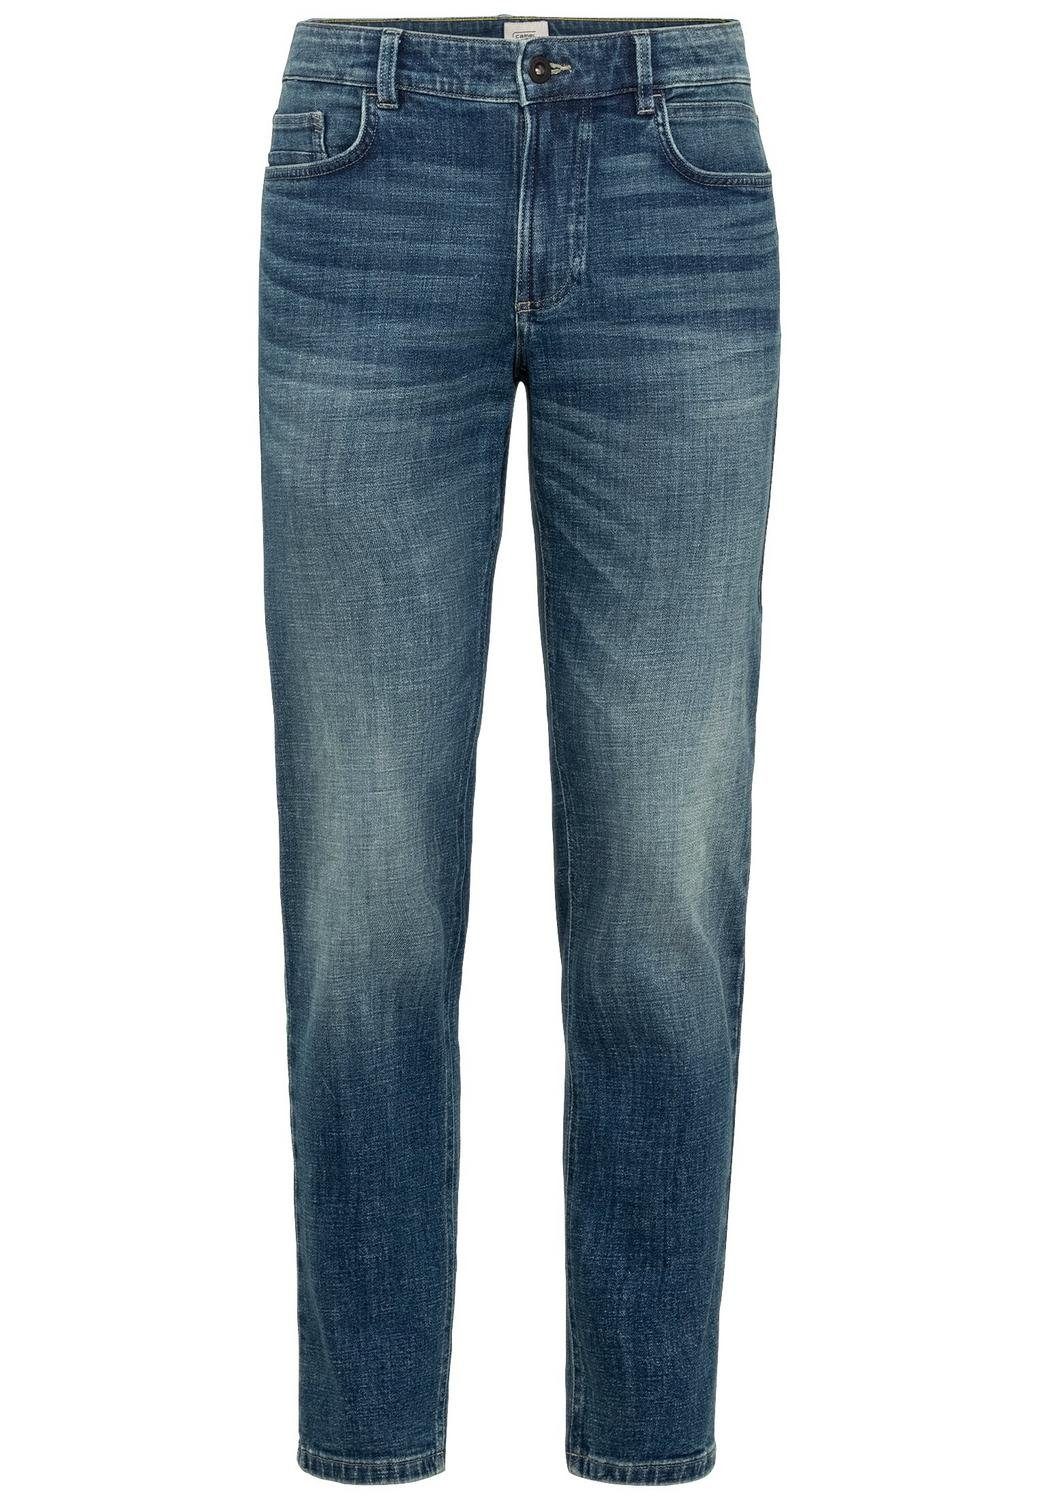 camel active Regular-fit-Jeans Denim Slim Fit, Mid Greencast